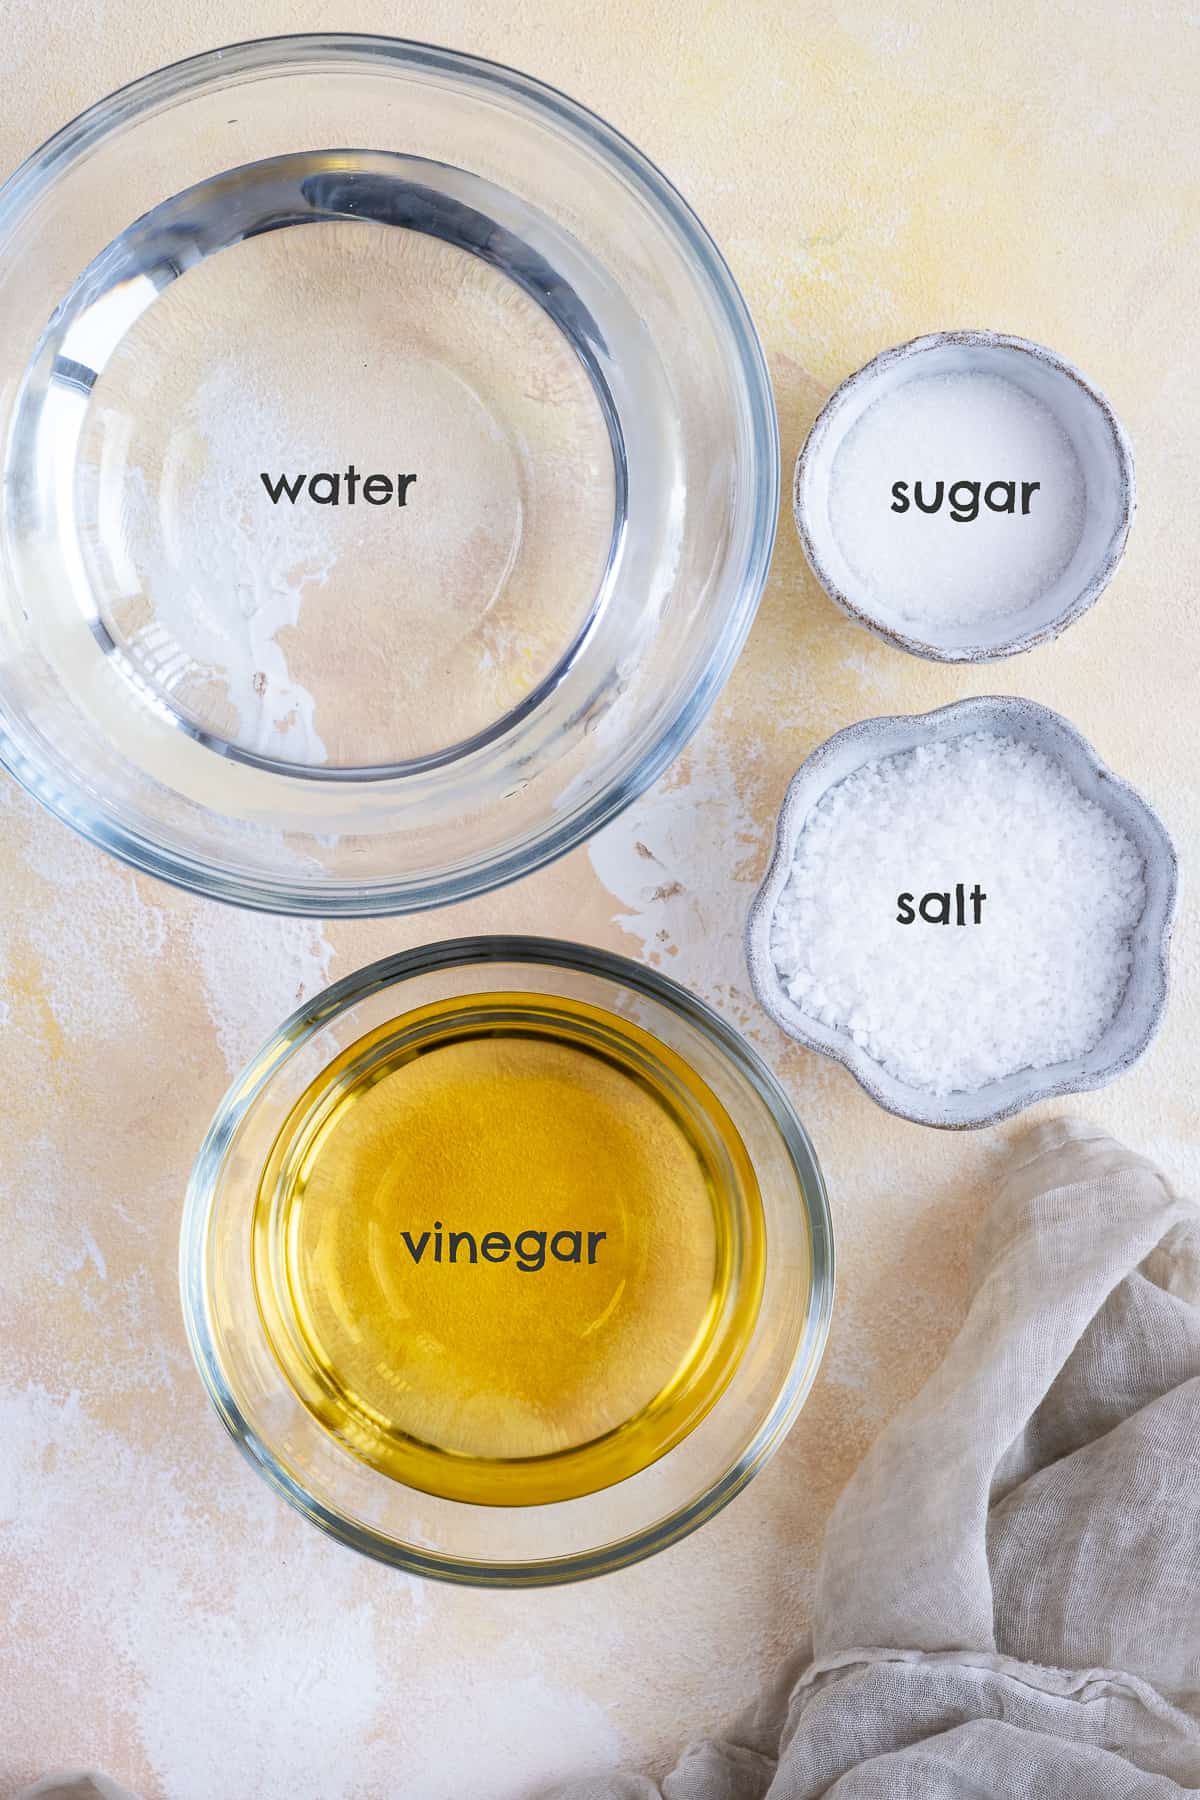 碗里放醋、水、盐和糖。